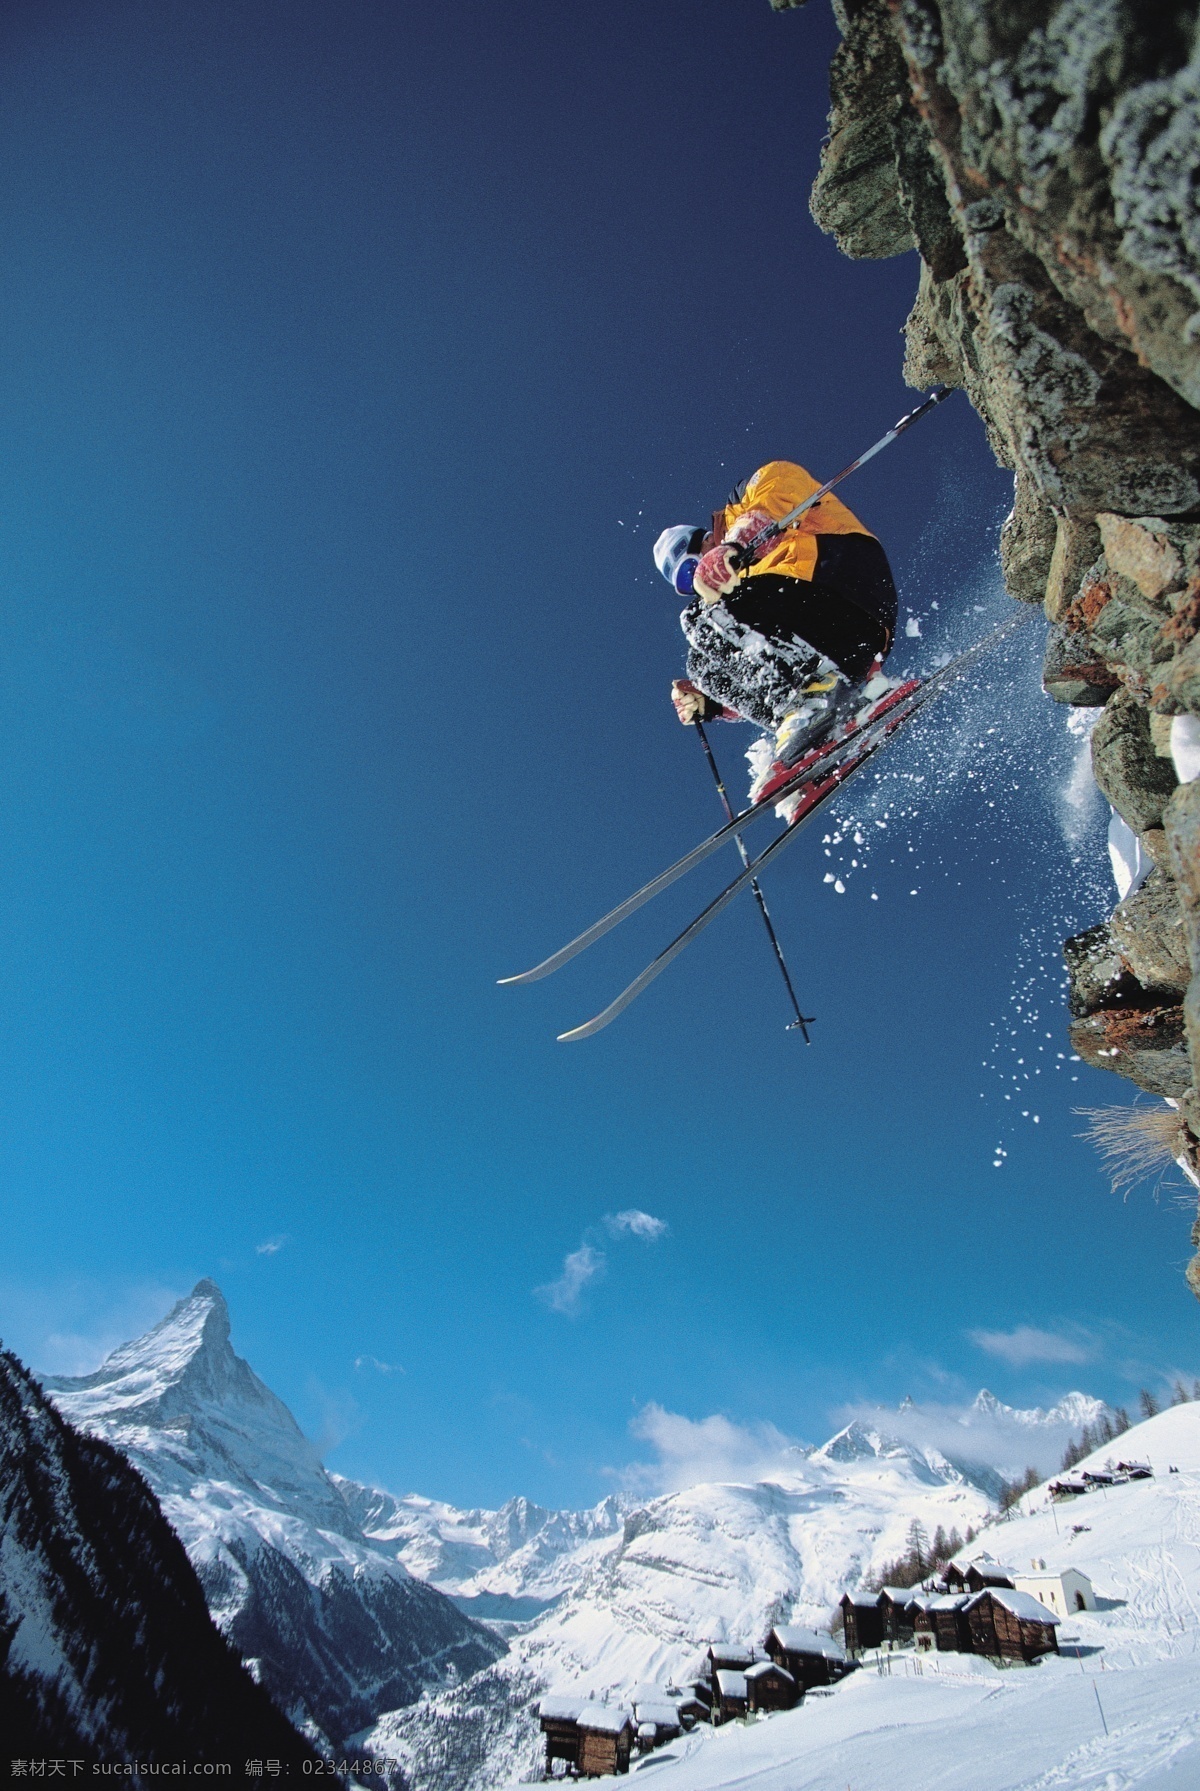 腾空 飞跃 滑雪 运动员 冬天 雪地运动 划雪运动 极限运动 体育项目 腾空飞跃 下滑 速度 运动图片 生活百科 雪山 美丽 雪景 风景 摄影图片 高清图片 滑雪图片